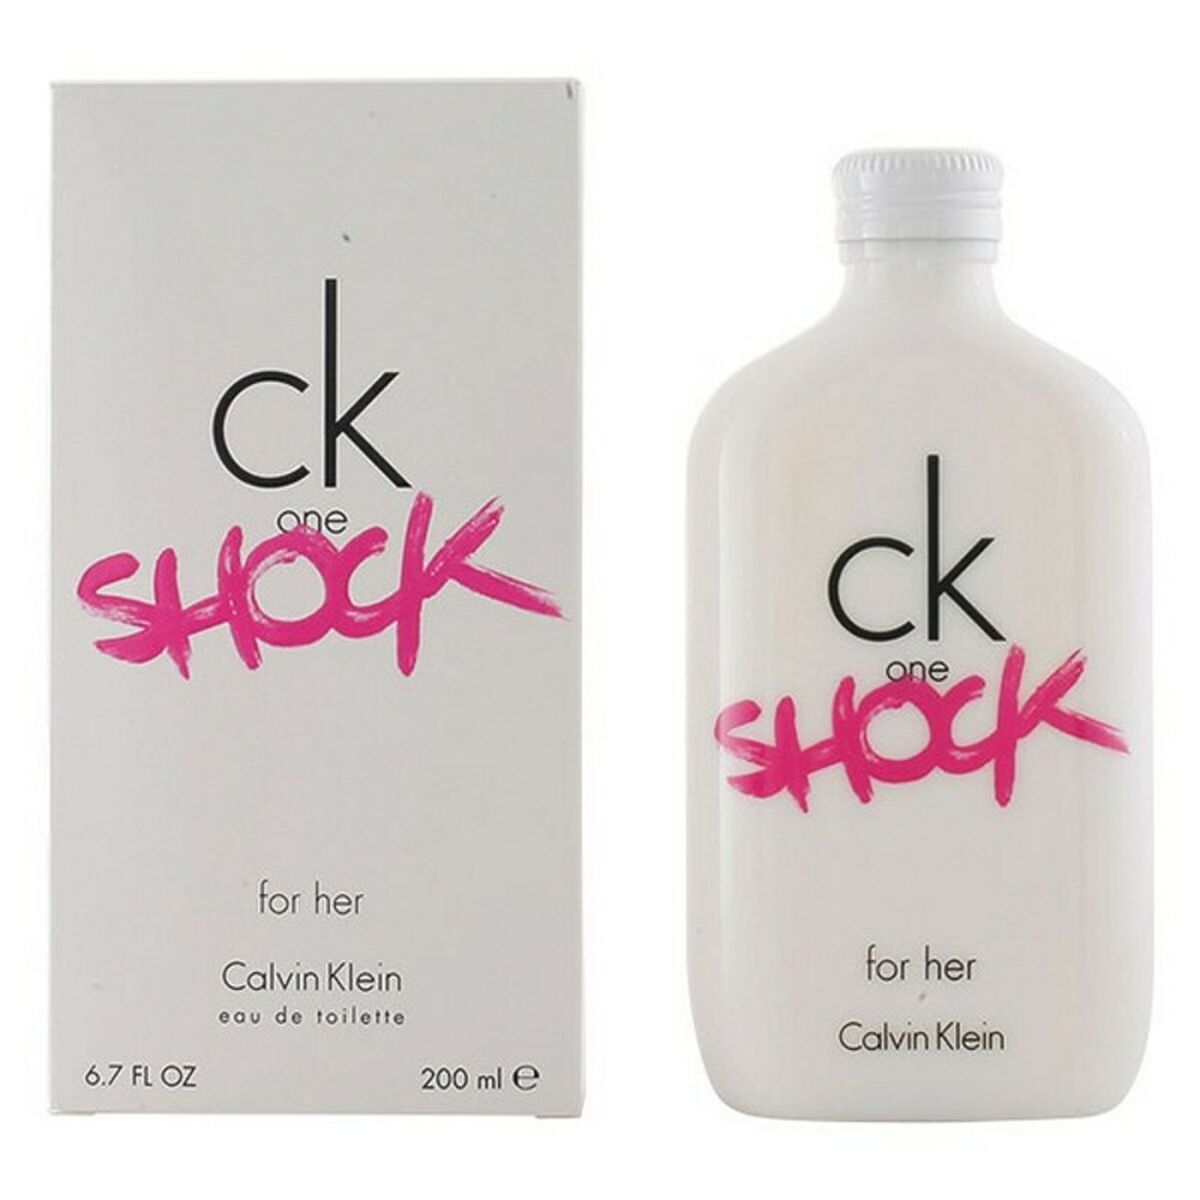 Parfum Femme Ck One Shock Calvin Klein EDT 200 ml